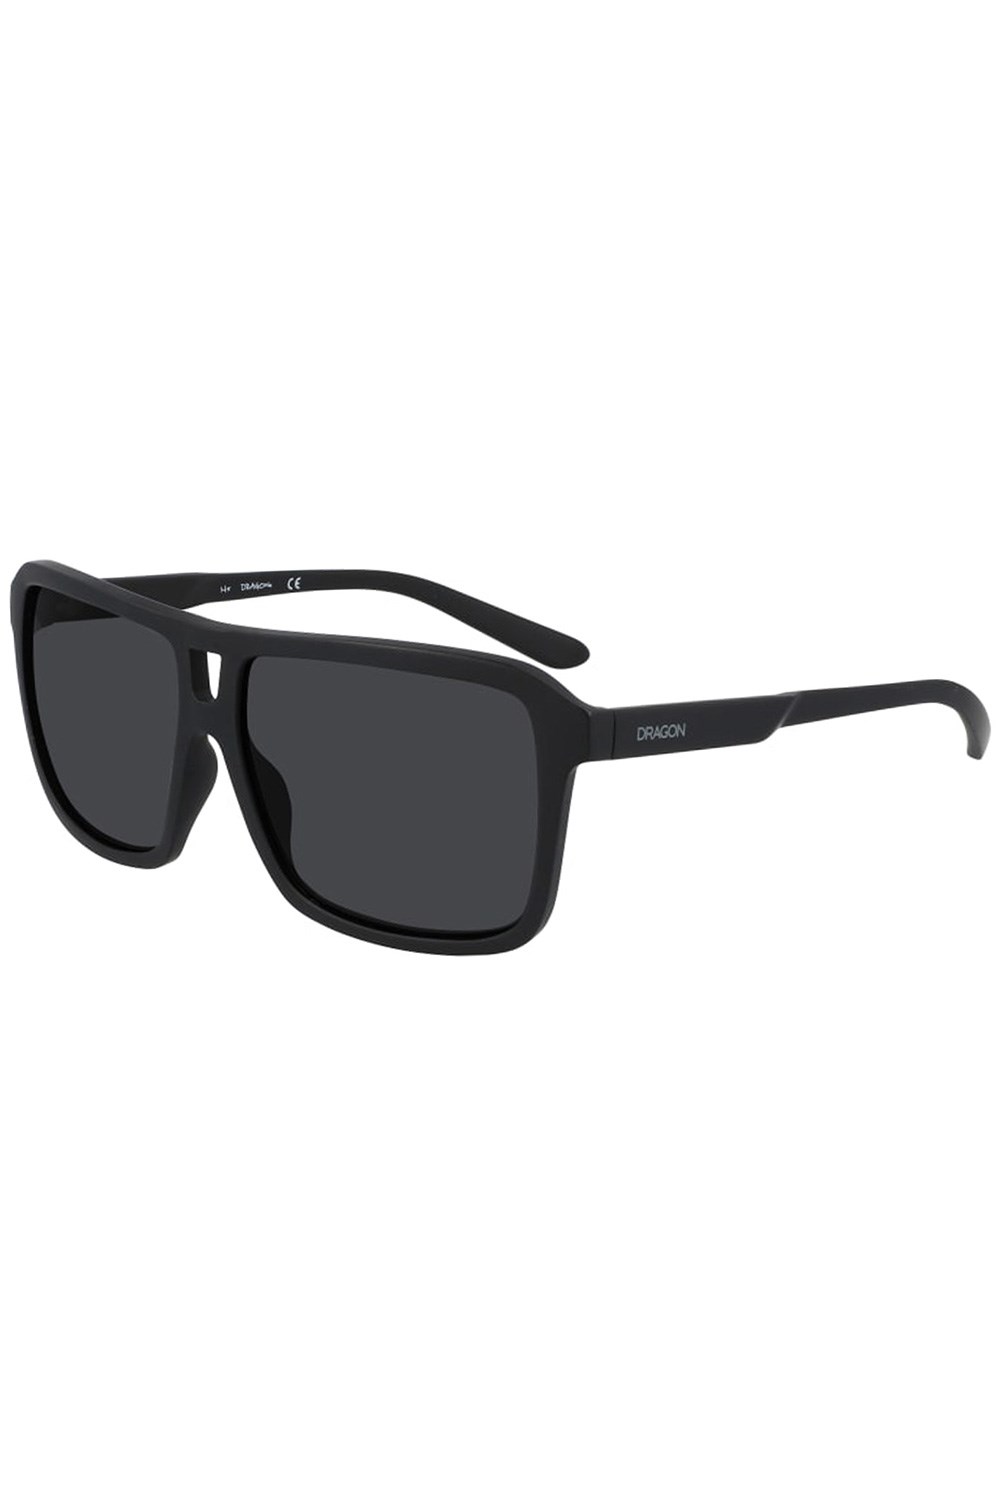 The Jam Upcycled Unisex Sunglasses -